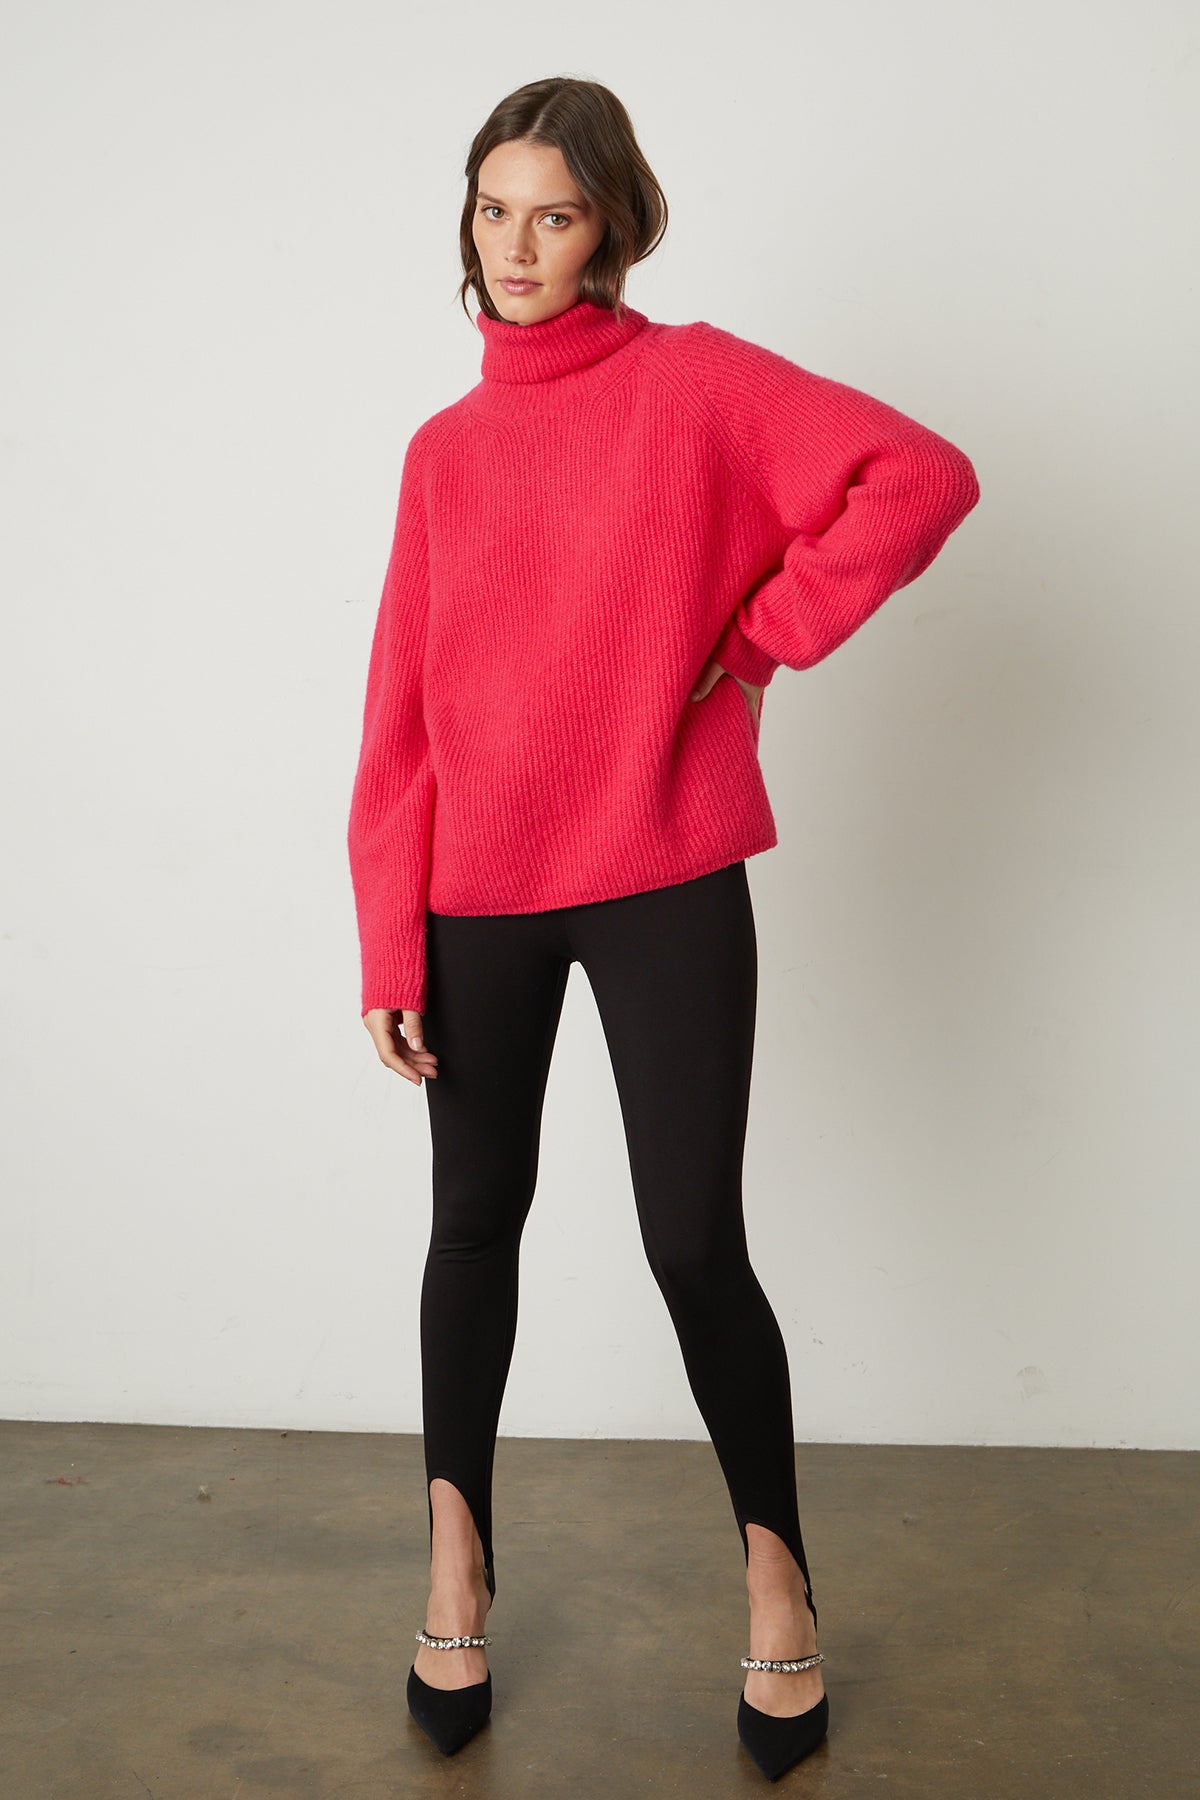 The model is wearing a Velvet by Graham & Spencer Judith turtleneck sweater and black leggings.-25548630556865